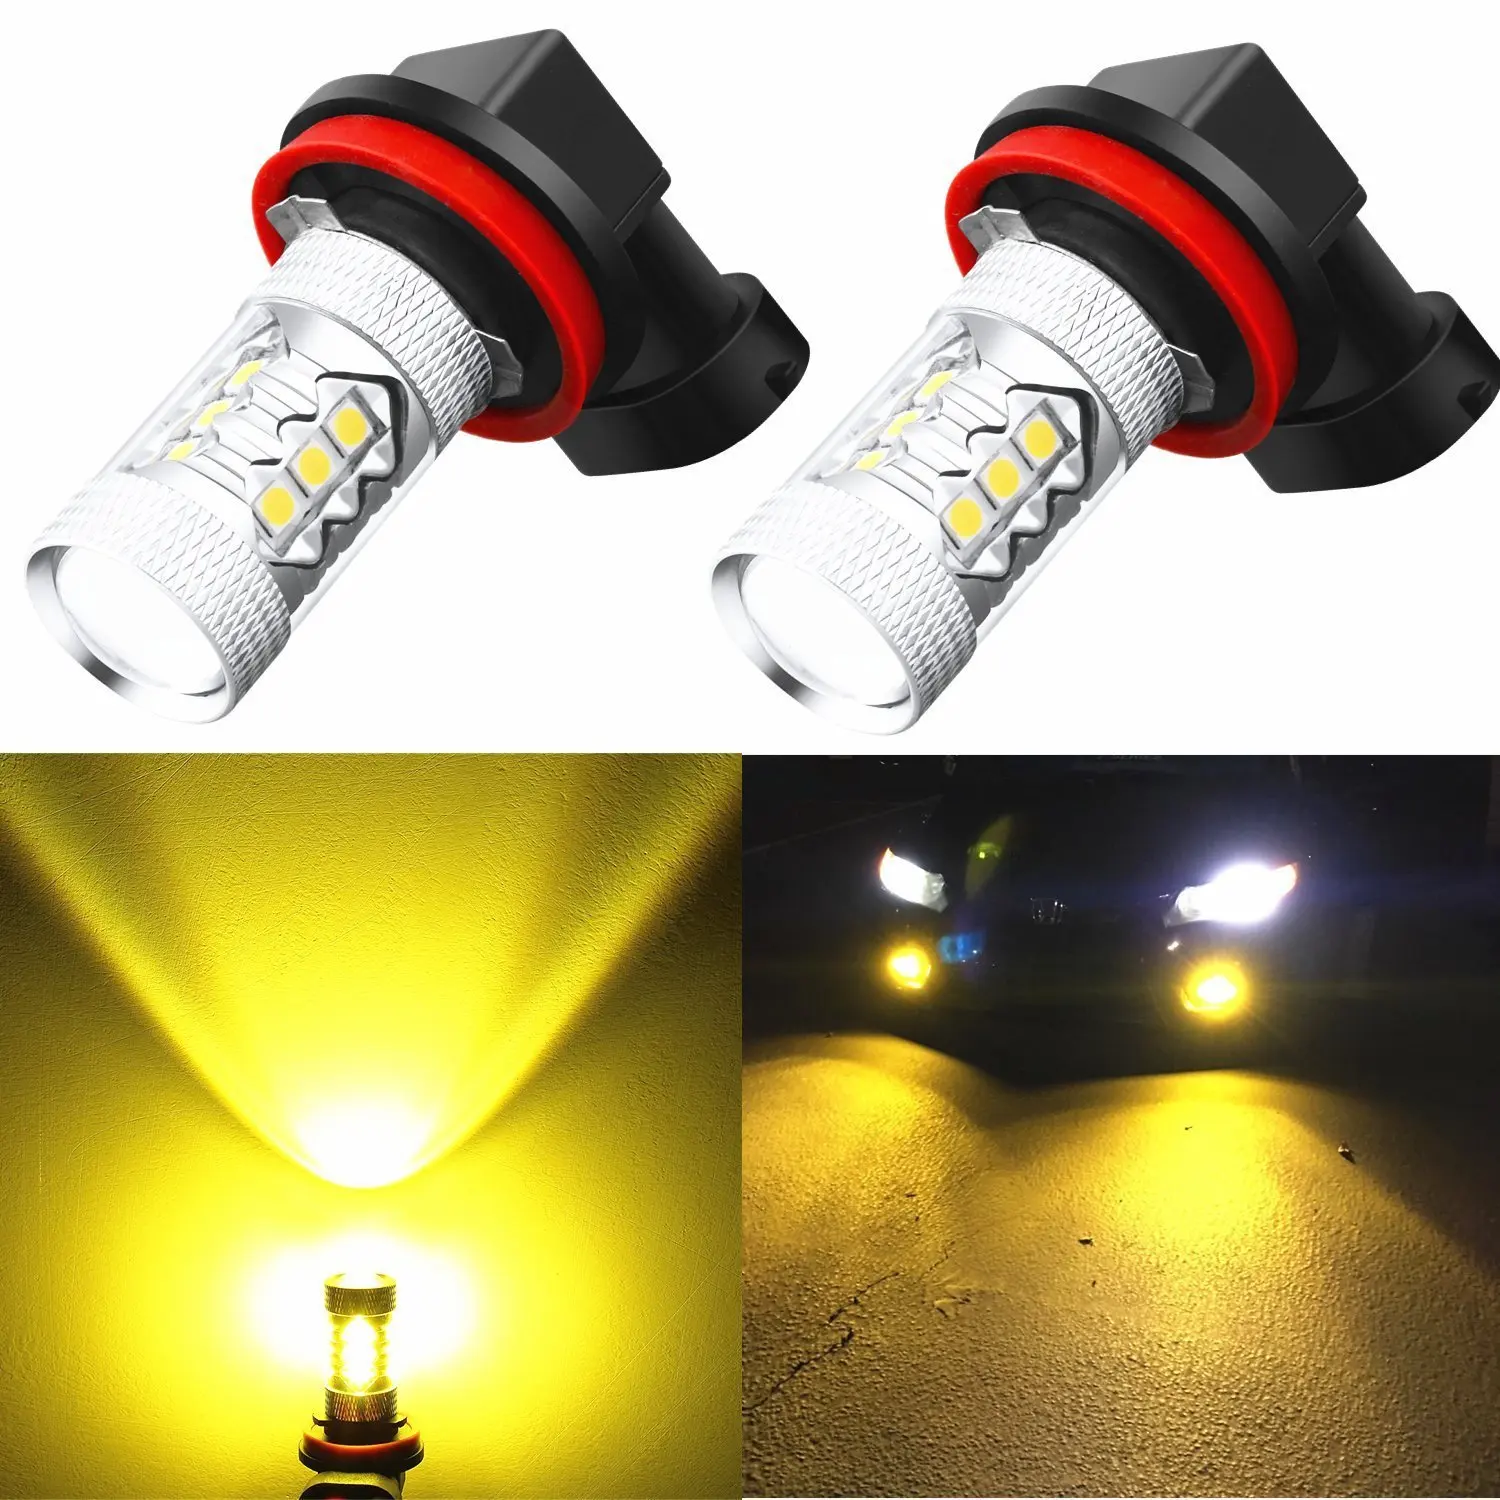 H16 12v. Yellow 3000k h11. Лед лампы h16. Лампа h11 12v led. H16 светодиодные лампы.